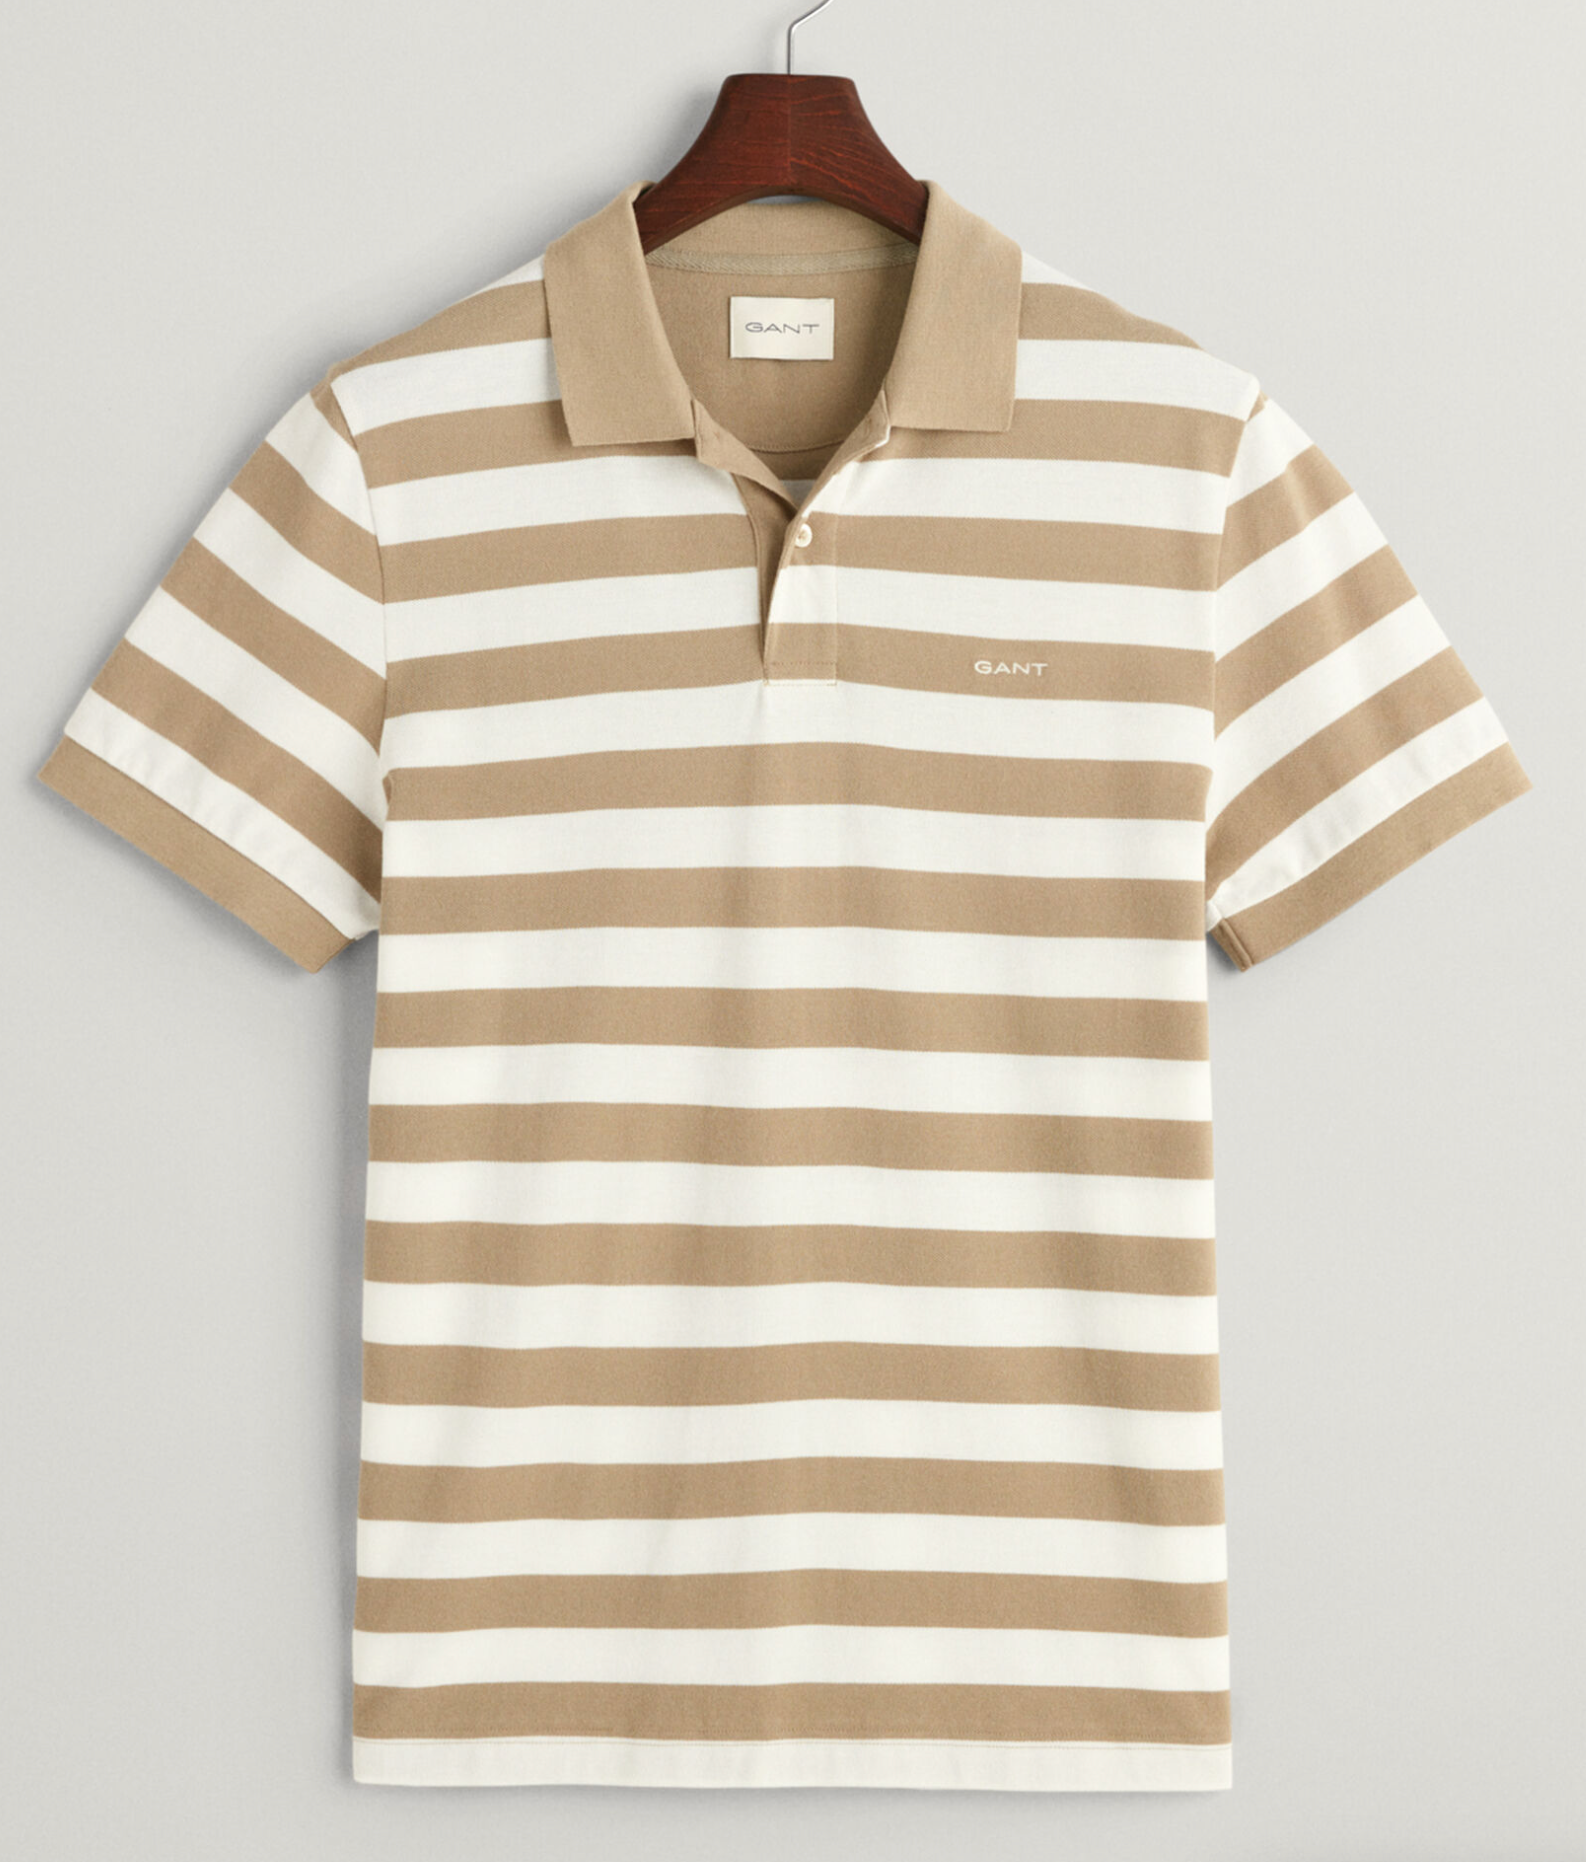 Gant Striped Polo Shirt Dried Clay